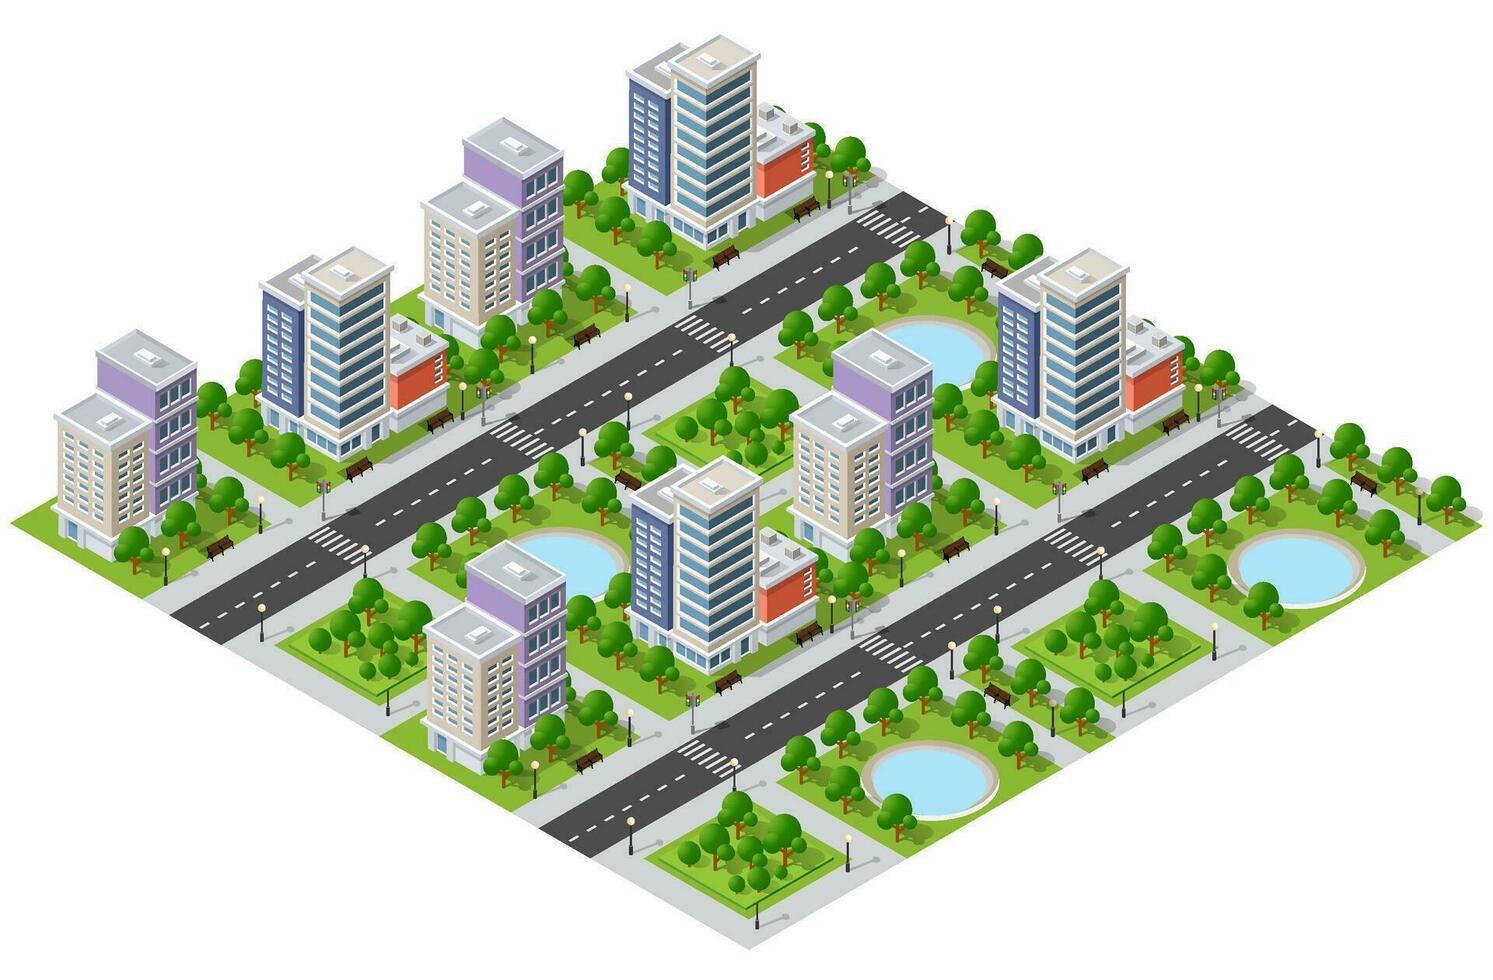 el ciudad estilo de vida escena en urbano temas con casas, carros, gente, arboles y parques concepto isométrica 3d ilustraciones vector para diseño, juegos, web